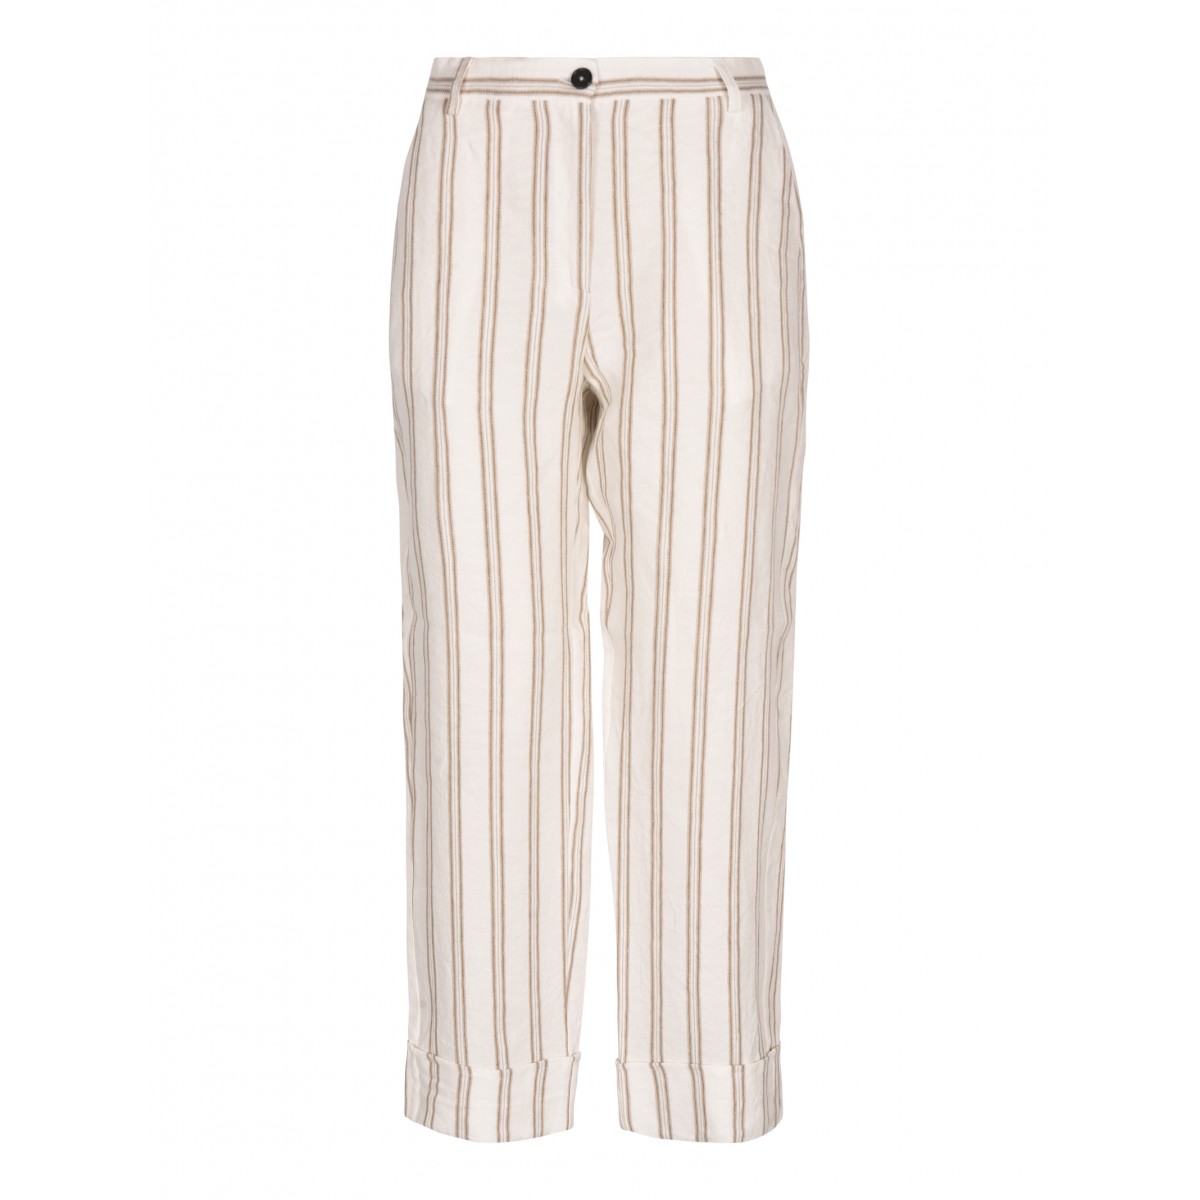 Summer Sand Striped Linen Pants